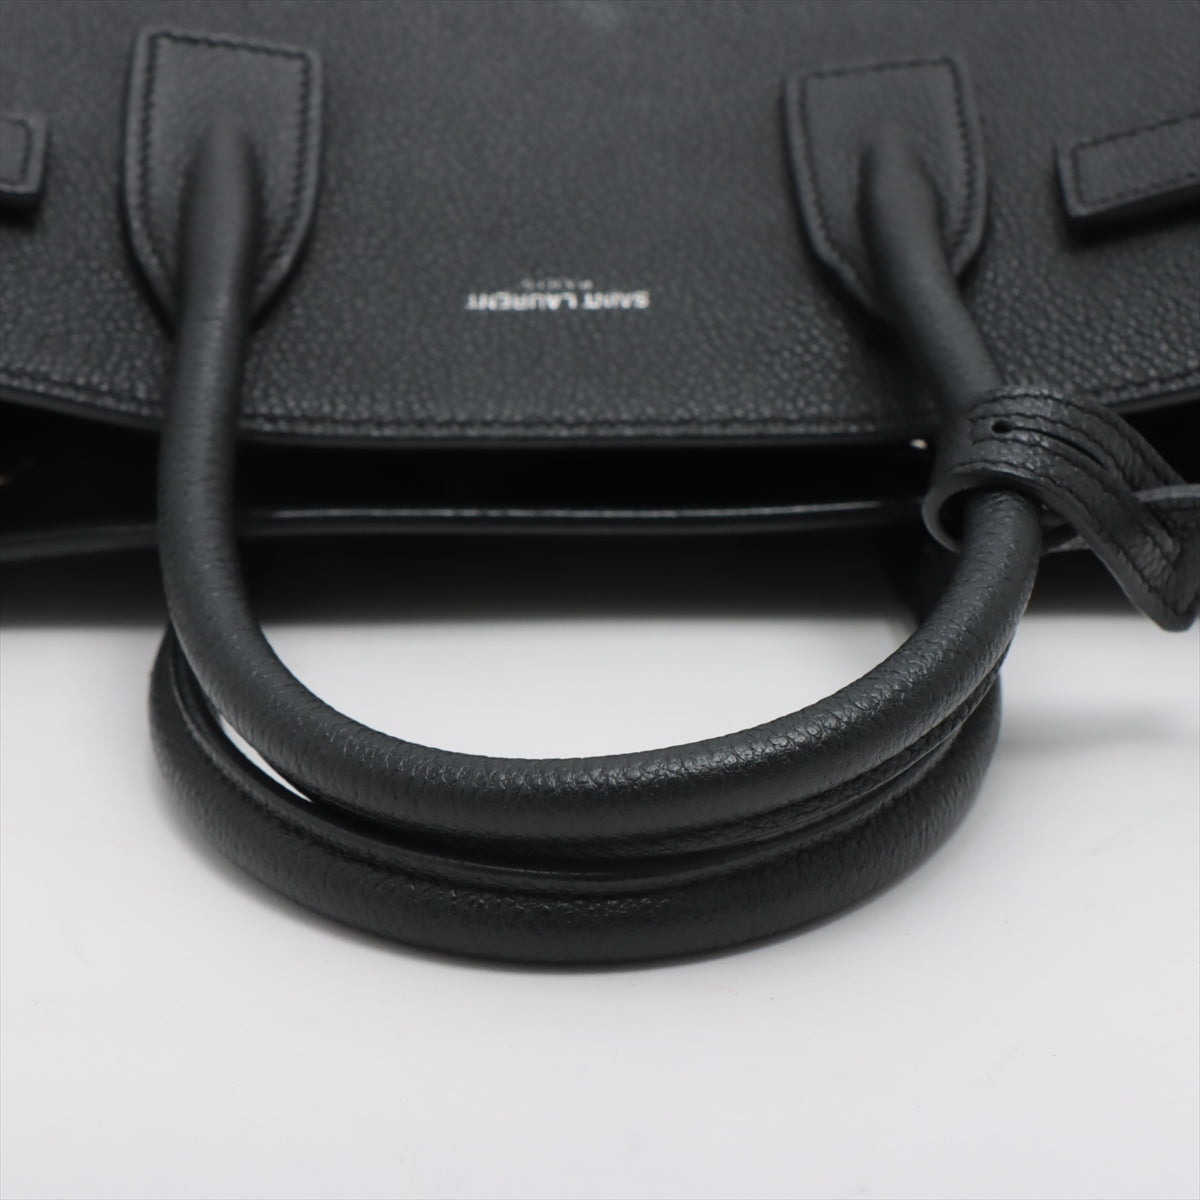 Saint Laurent Paris Leather 2 Way Handbag Black